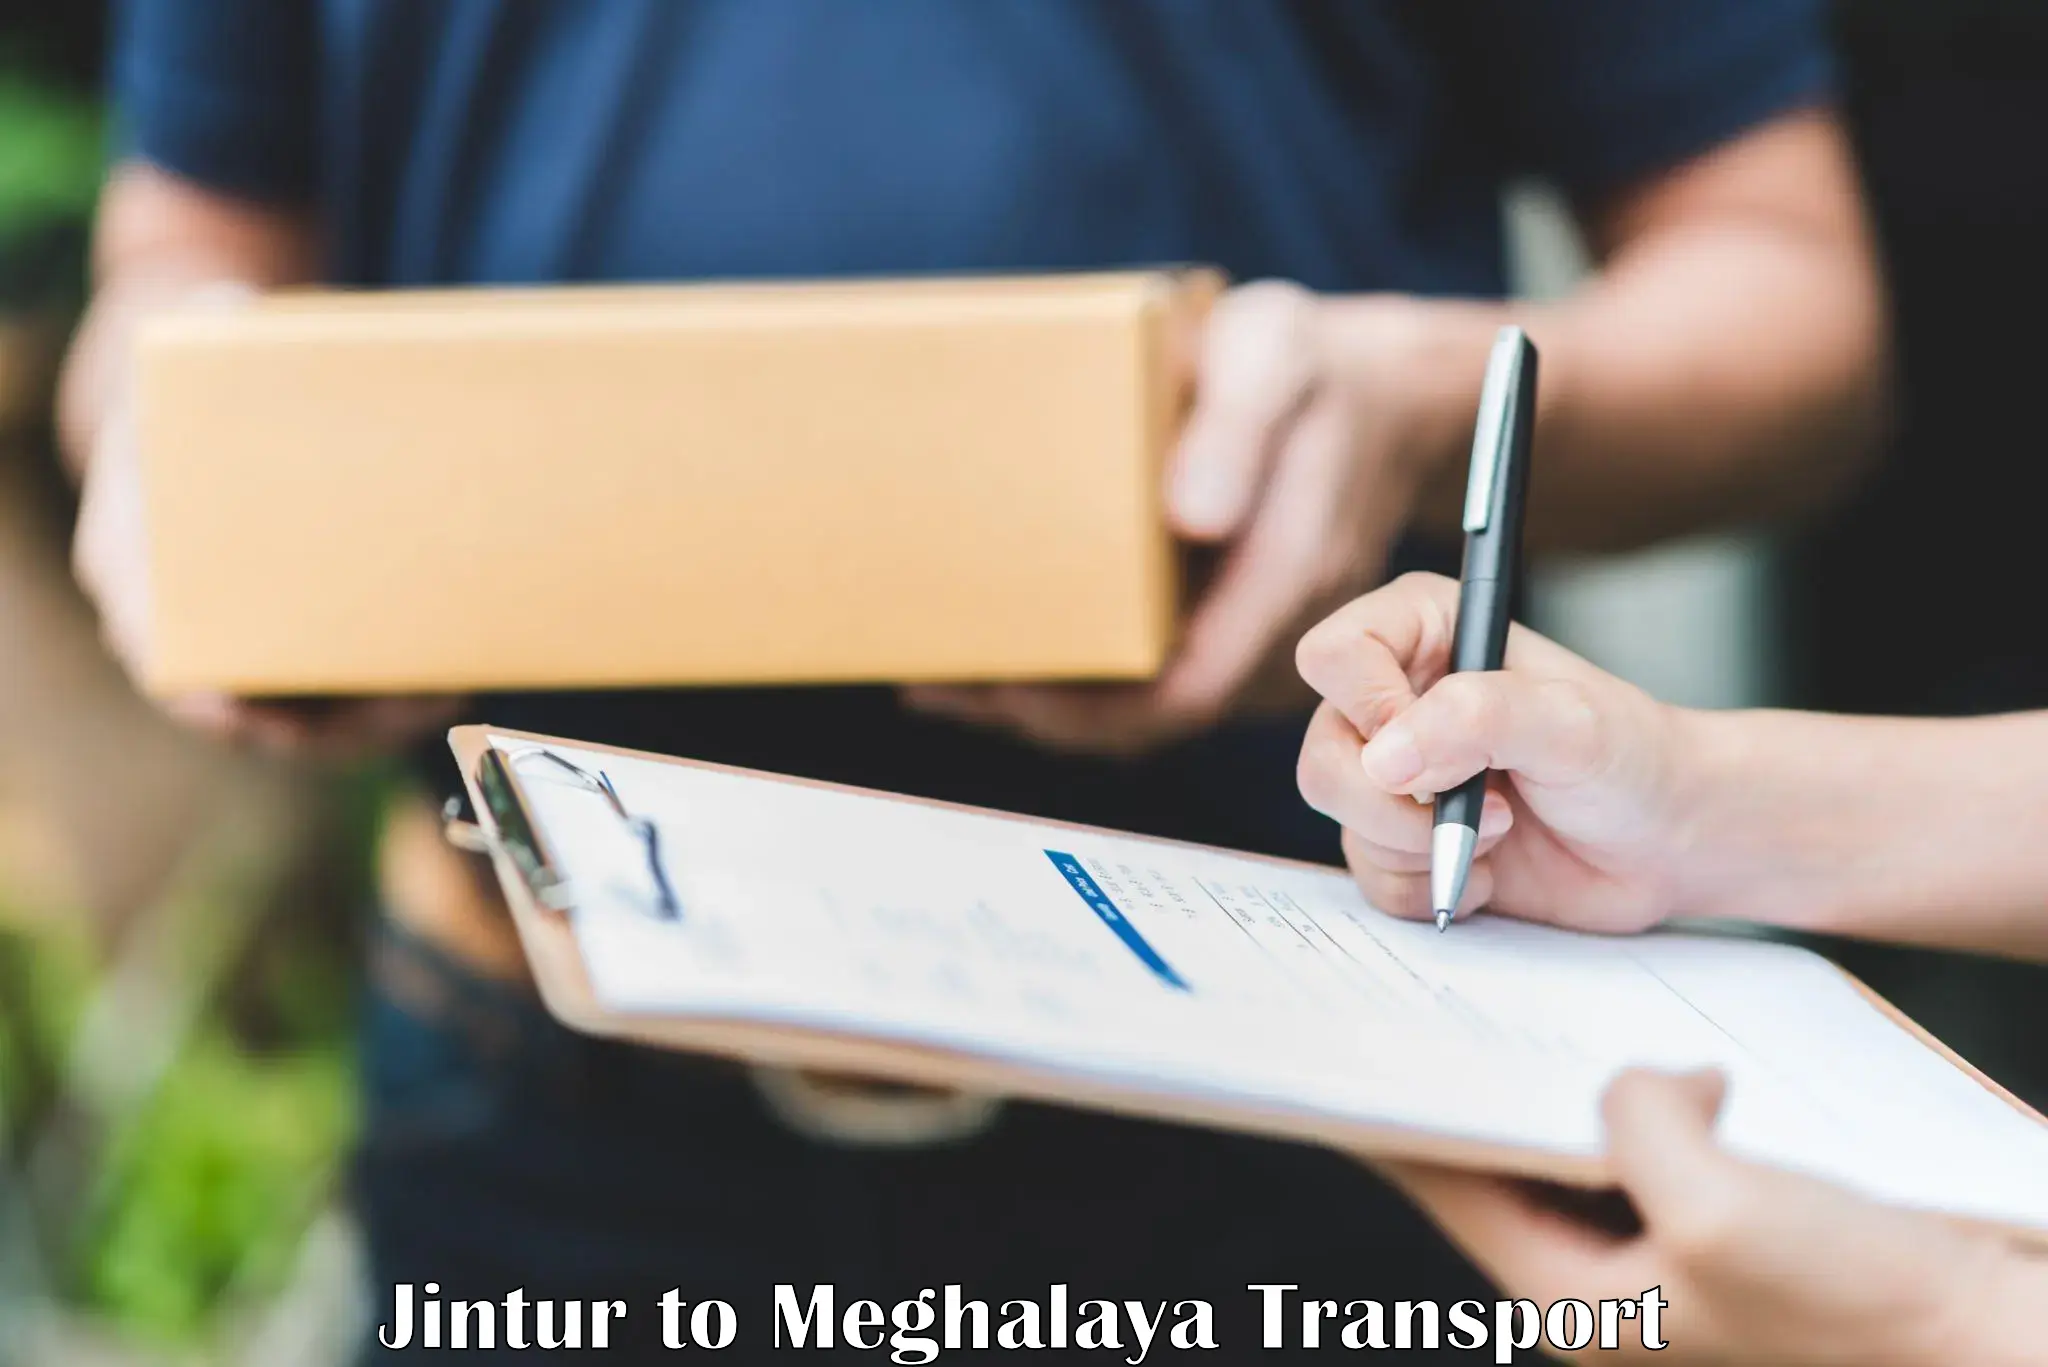 Intercity transport Jintur to Meghalaya